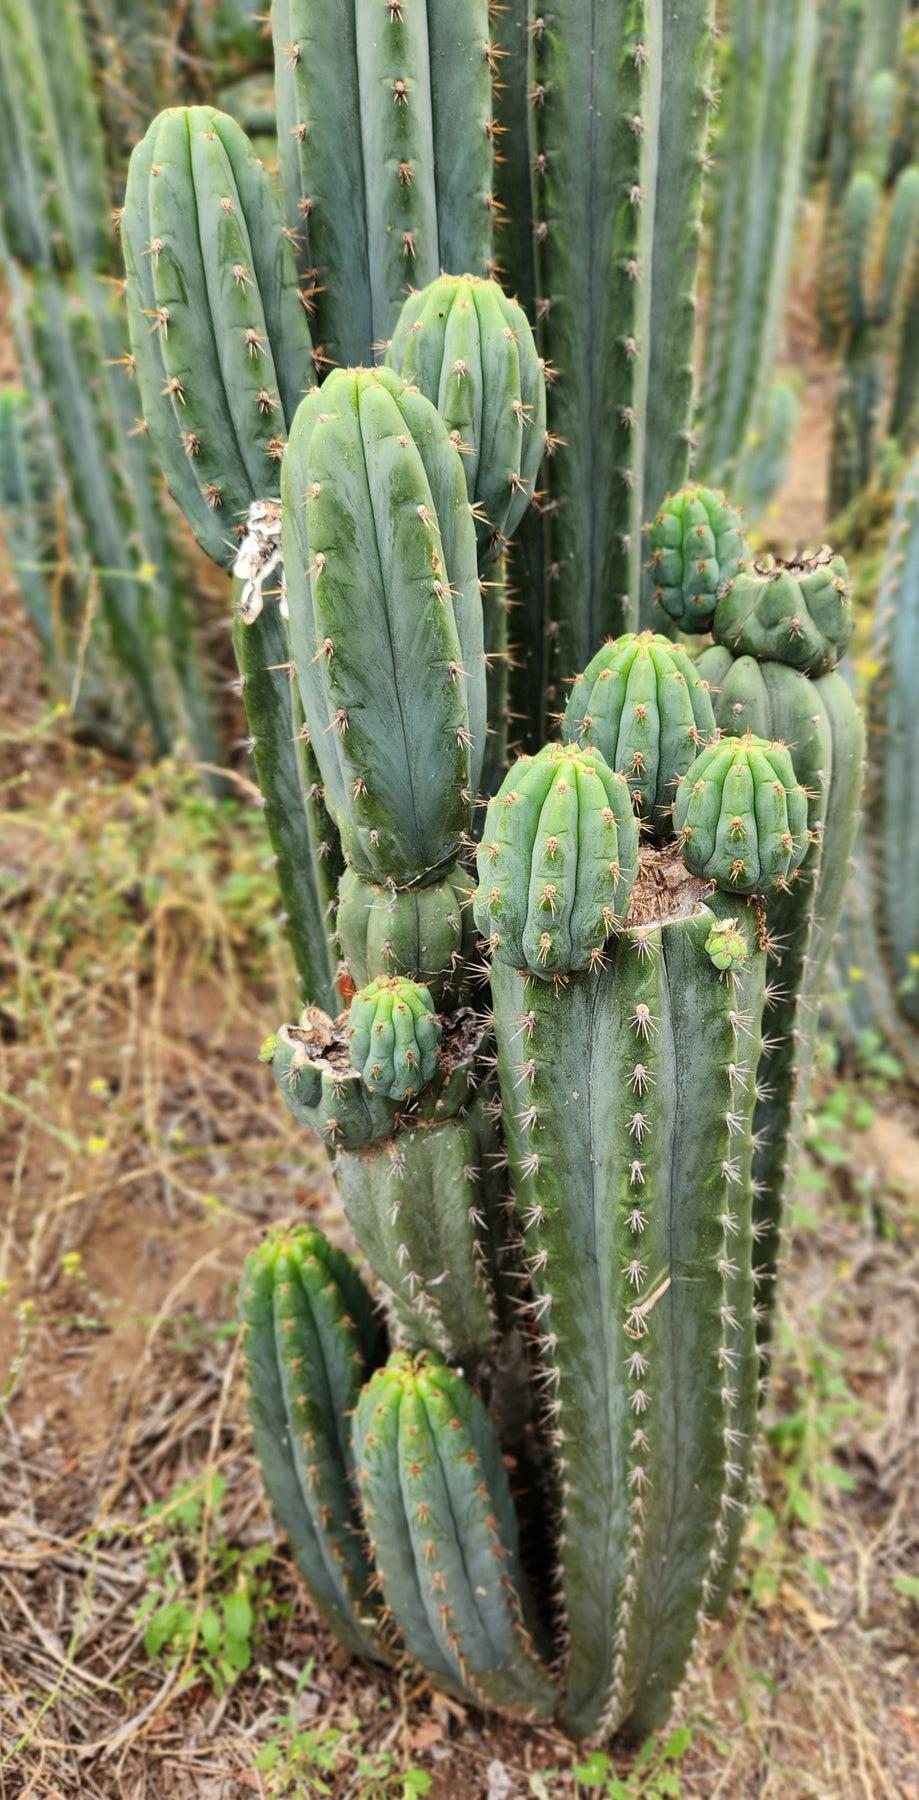 #EC196 EXACT trichocereus Peruvianus "Rancho" Ornamental Cactus Cutting 8-14"-Cactus - Large - Exact-The Succulent Source